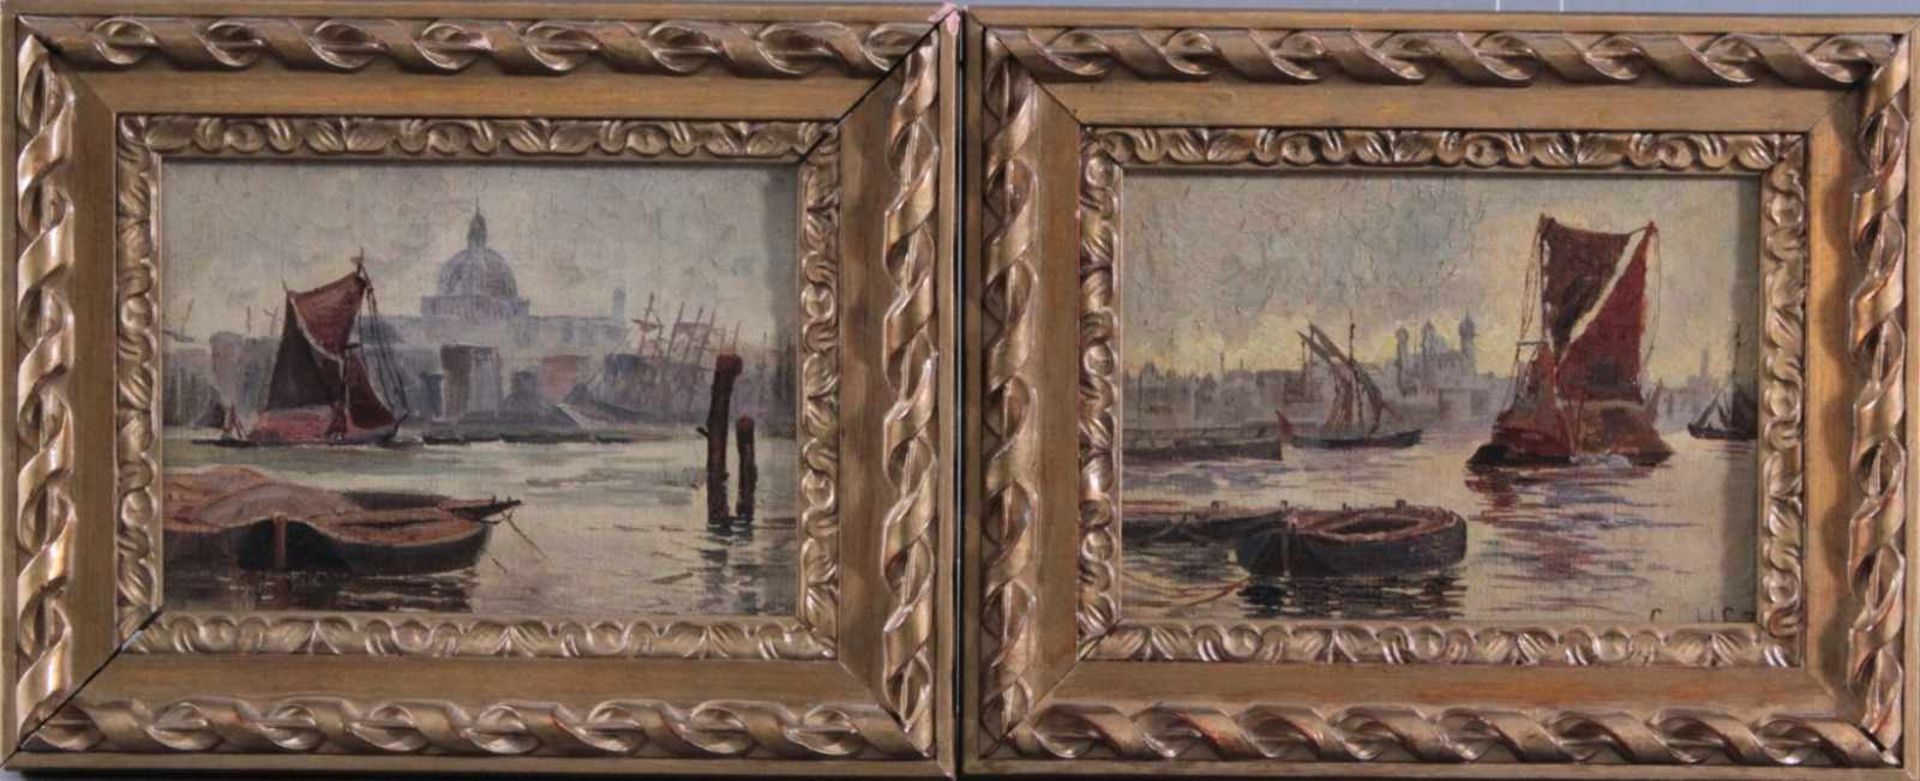 2 kleine Gemälde "Venedig"Öl auf Leinwand gemalt, 1 Bild unten rechts bez. Cop H.AS.72, gerahmt, ca.